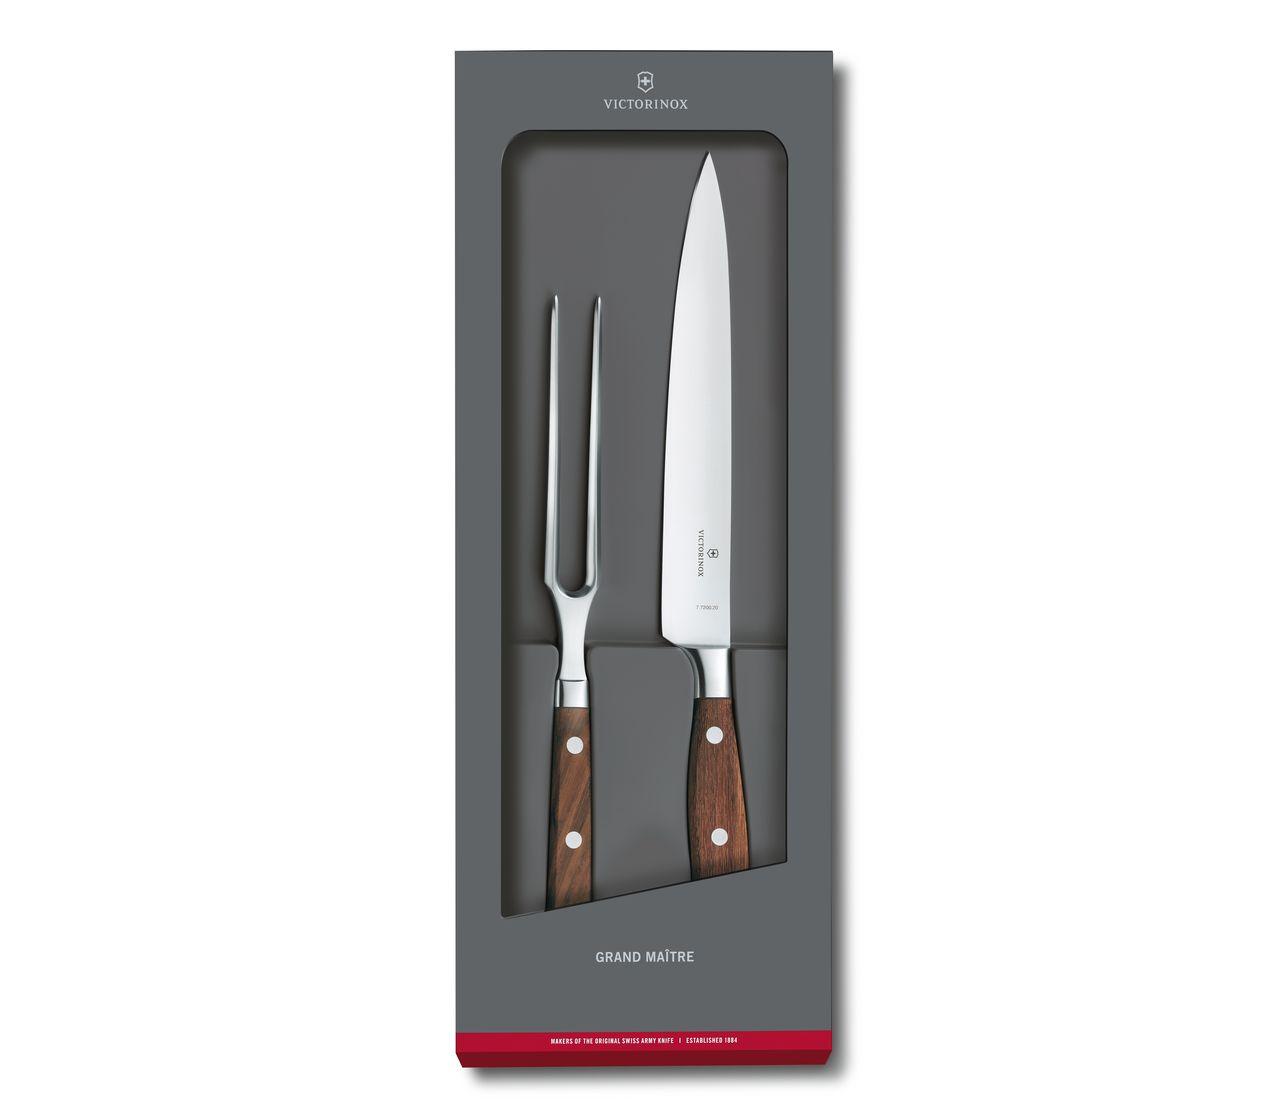 Carving Knife Set – Kerr Forge